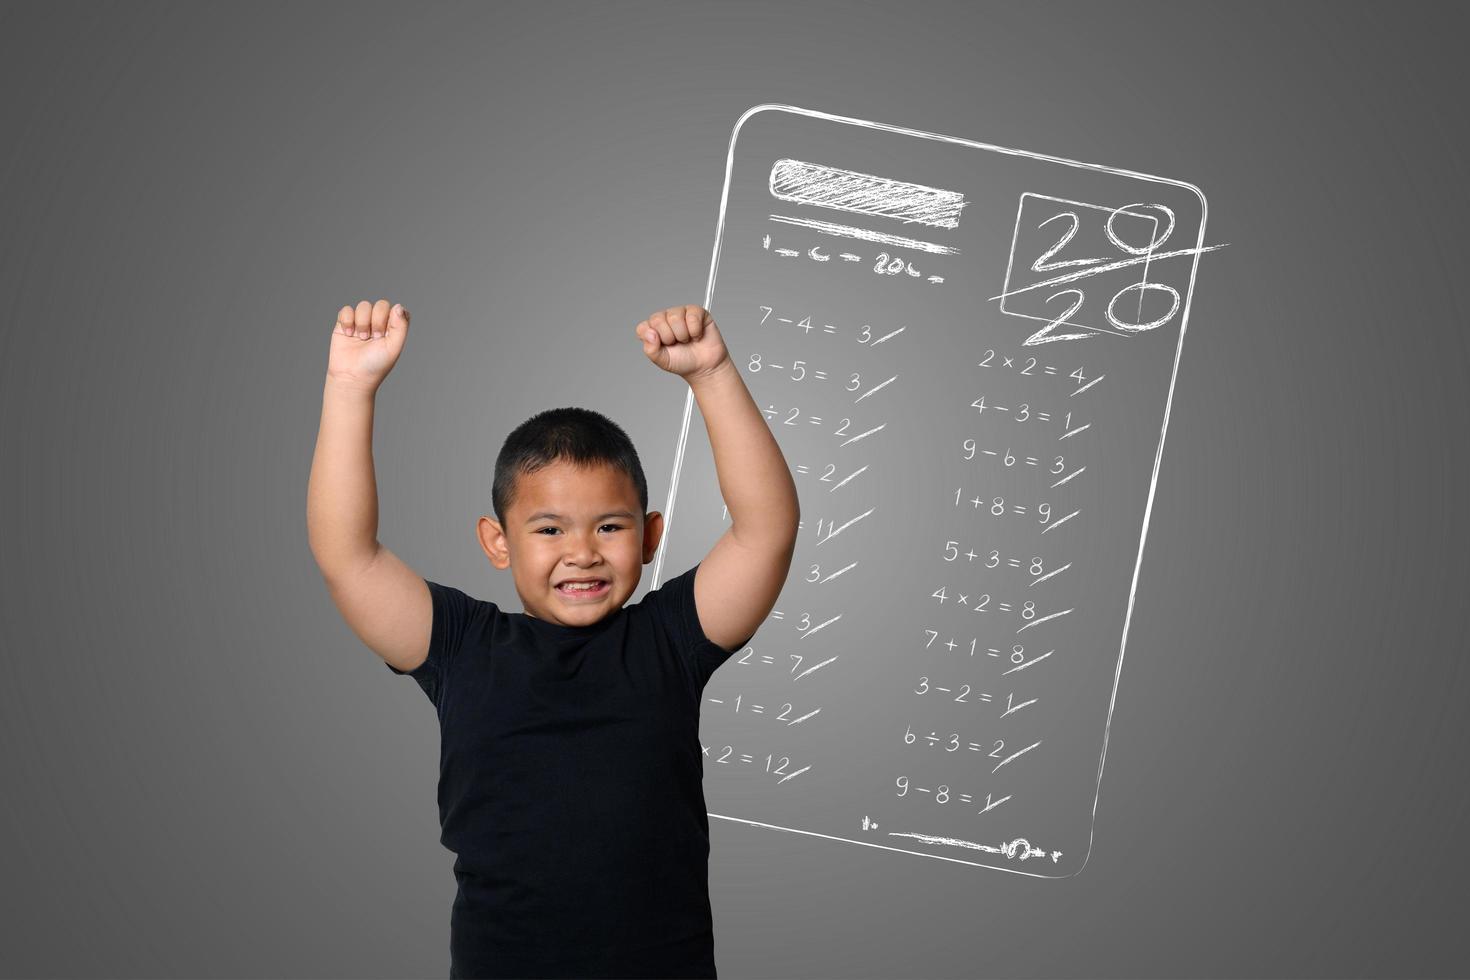 giovane ragazzo mostra il massimo dei voti nei test scolastici sulla lavagna foto